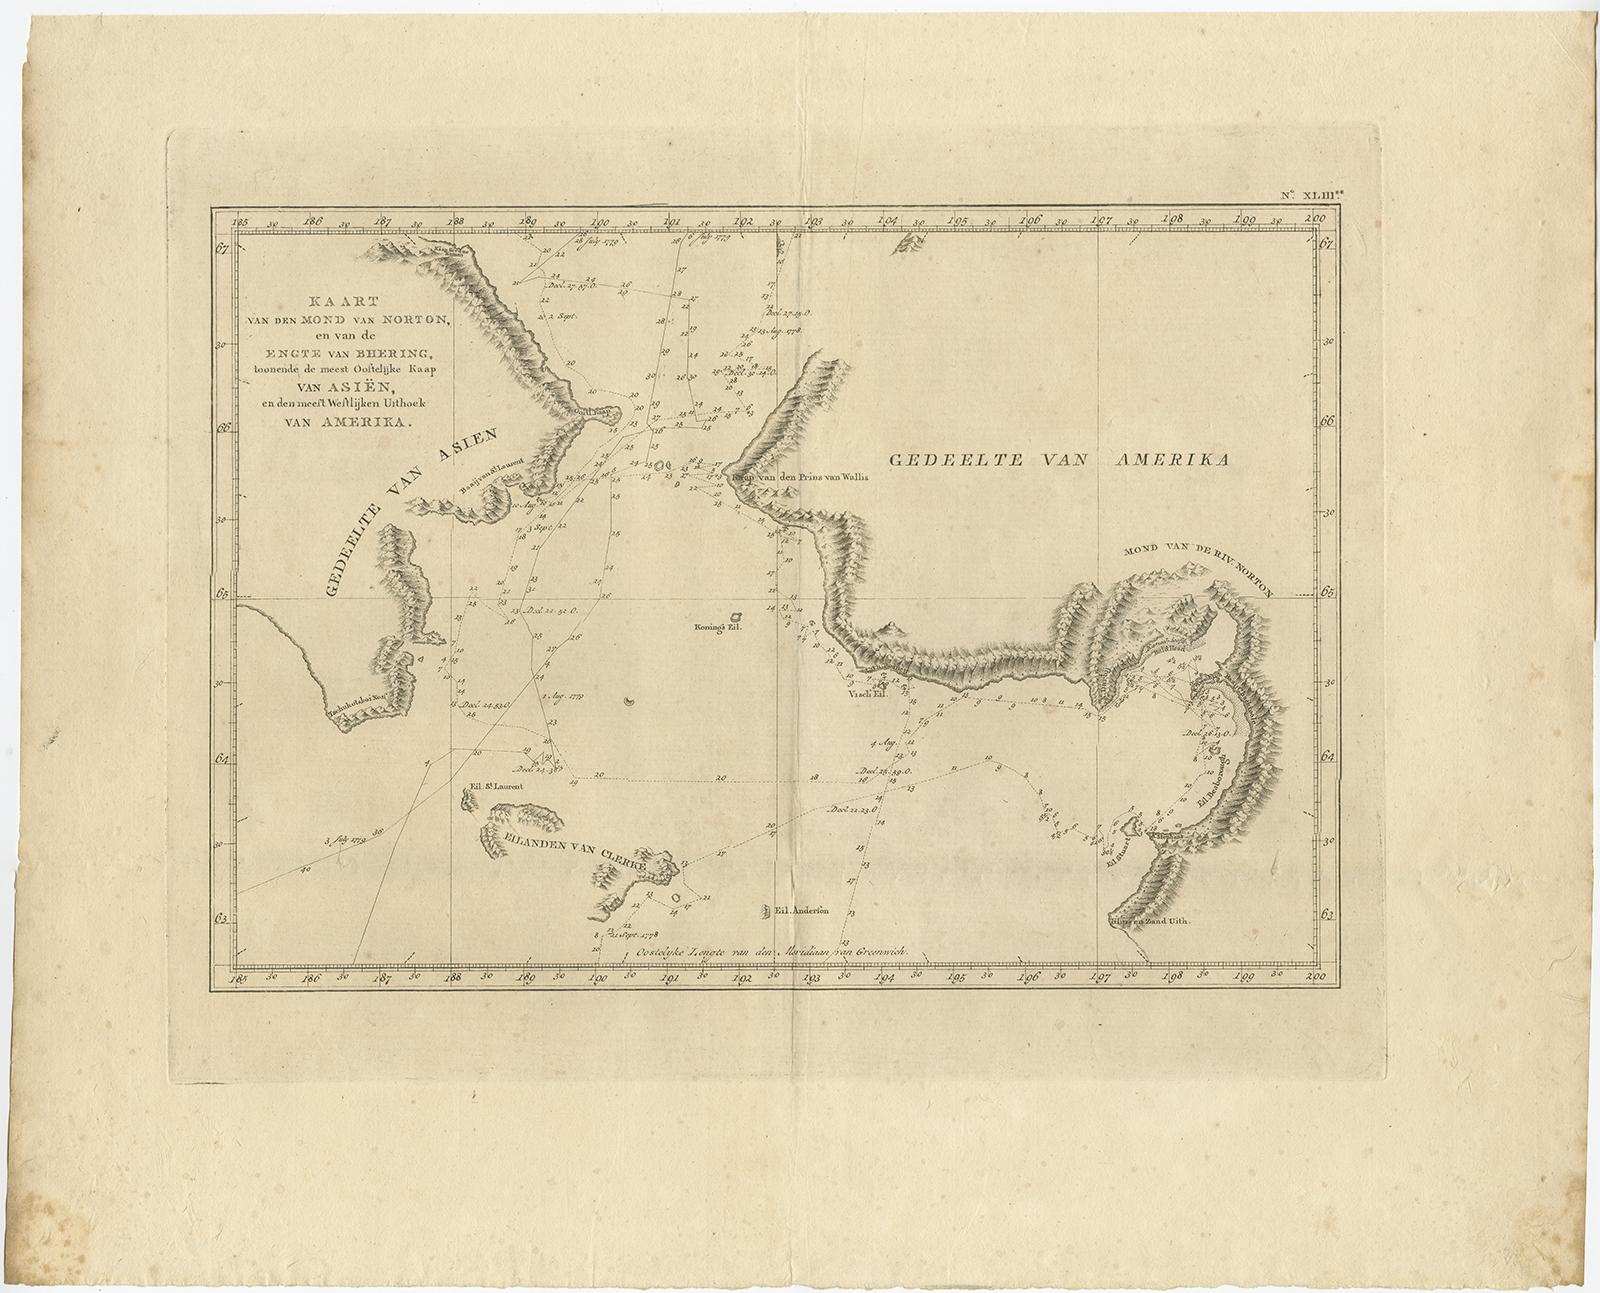 Antique map titled 'Kaart van den Mond van Norton, en van de Engte van Bhering, toonende de meest Oostlijke Kaap van Asien, en den meest Westlijken Urthoek van Amerika'. 

Map of the Bering Strait from the coast south of Norton Sound to the coast